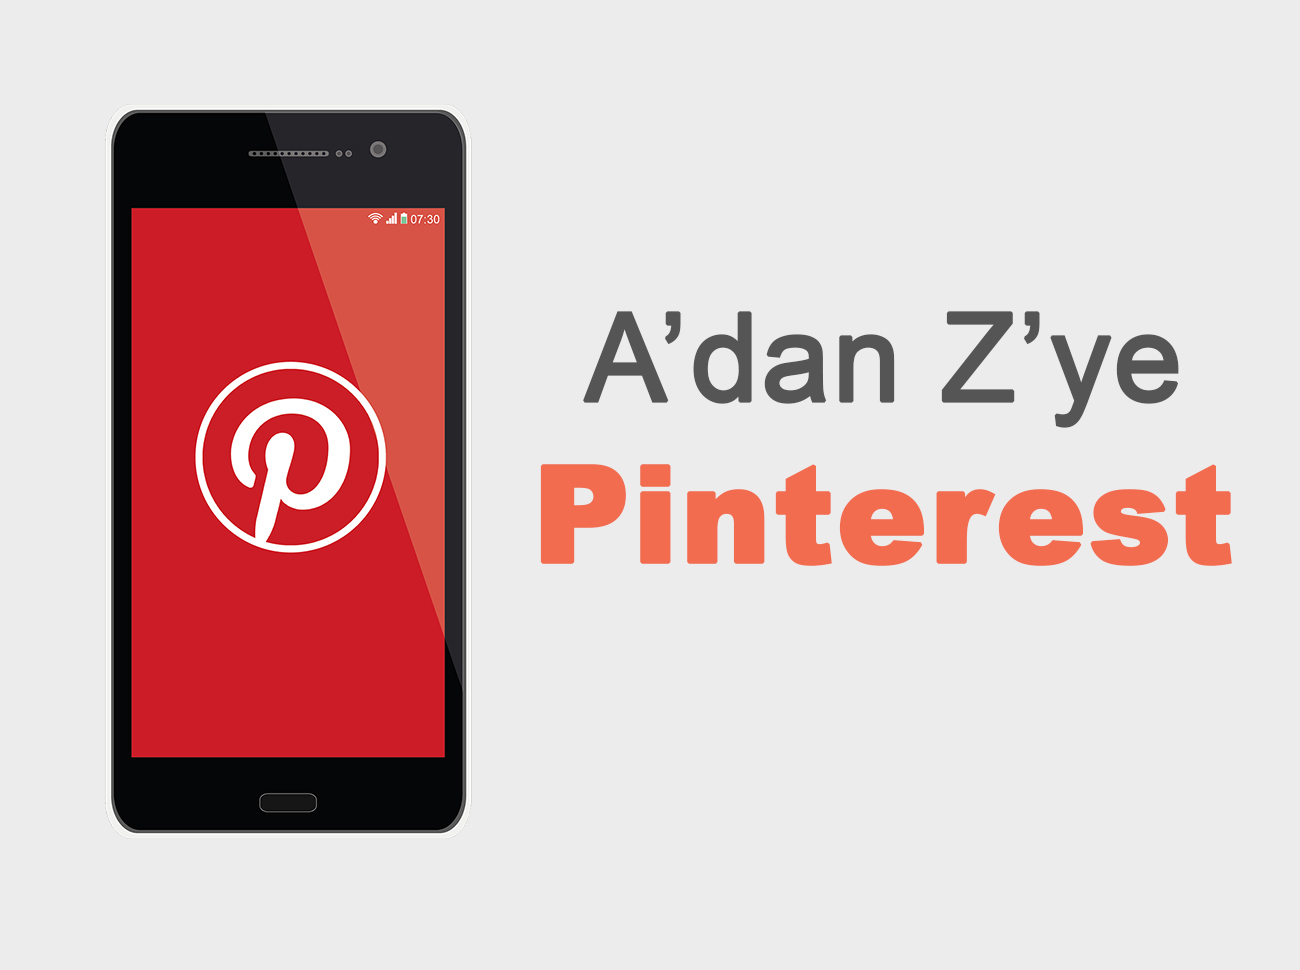 A’dan Z’ye Pinterest: Pinterest Nedir? Pinterest Nasıl Kullanılır? Pinterest Niye Önemlidir?